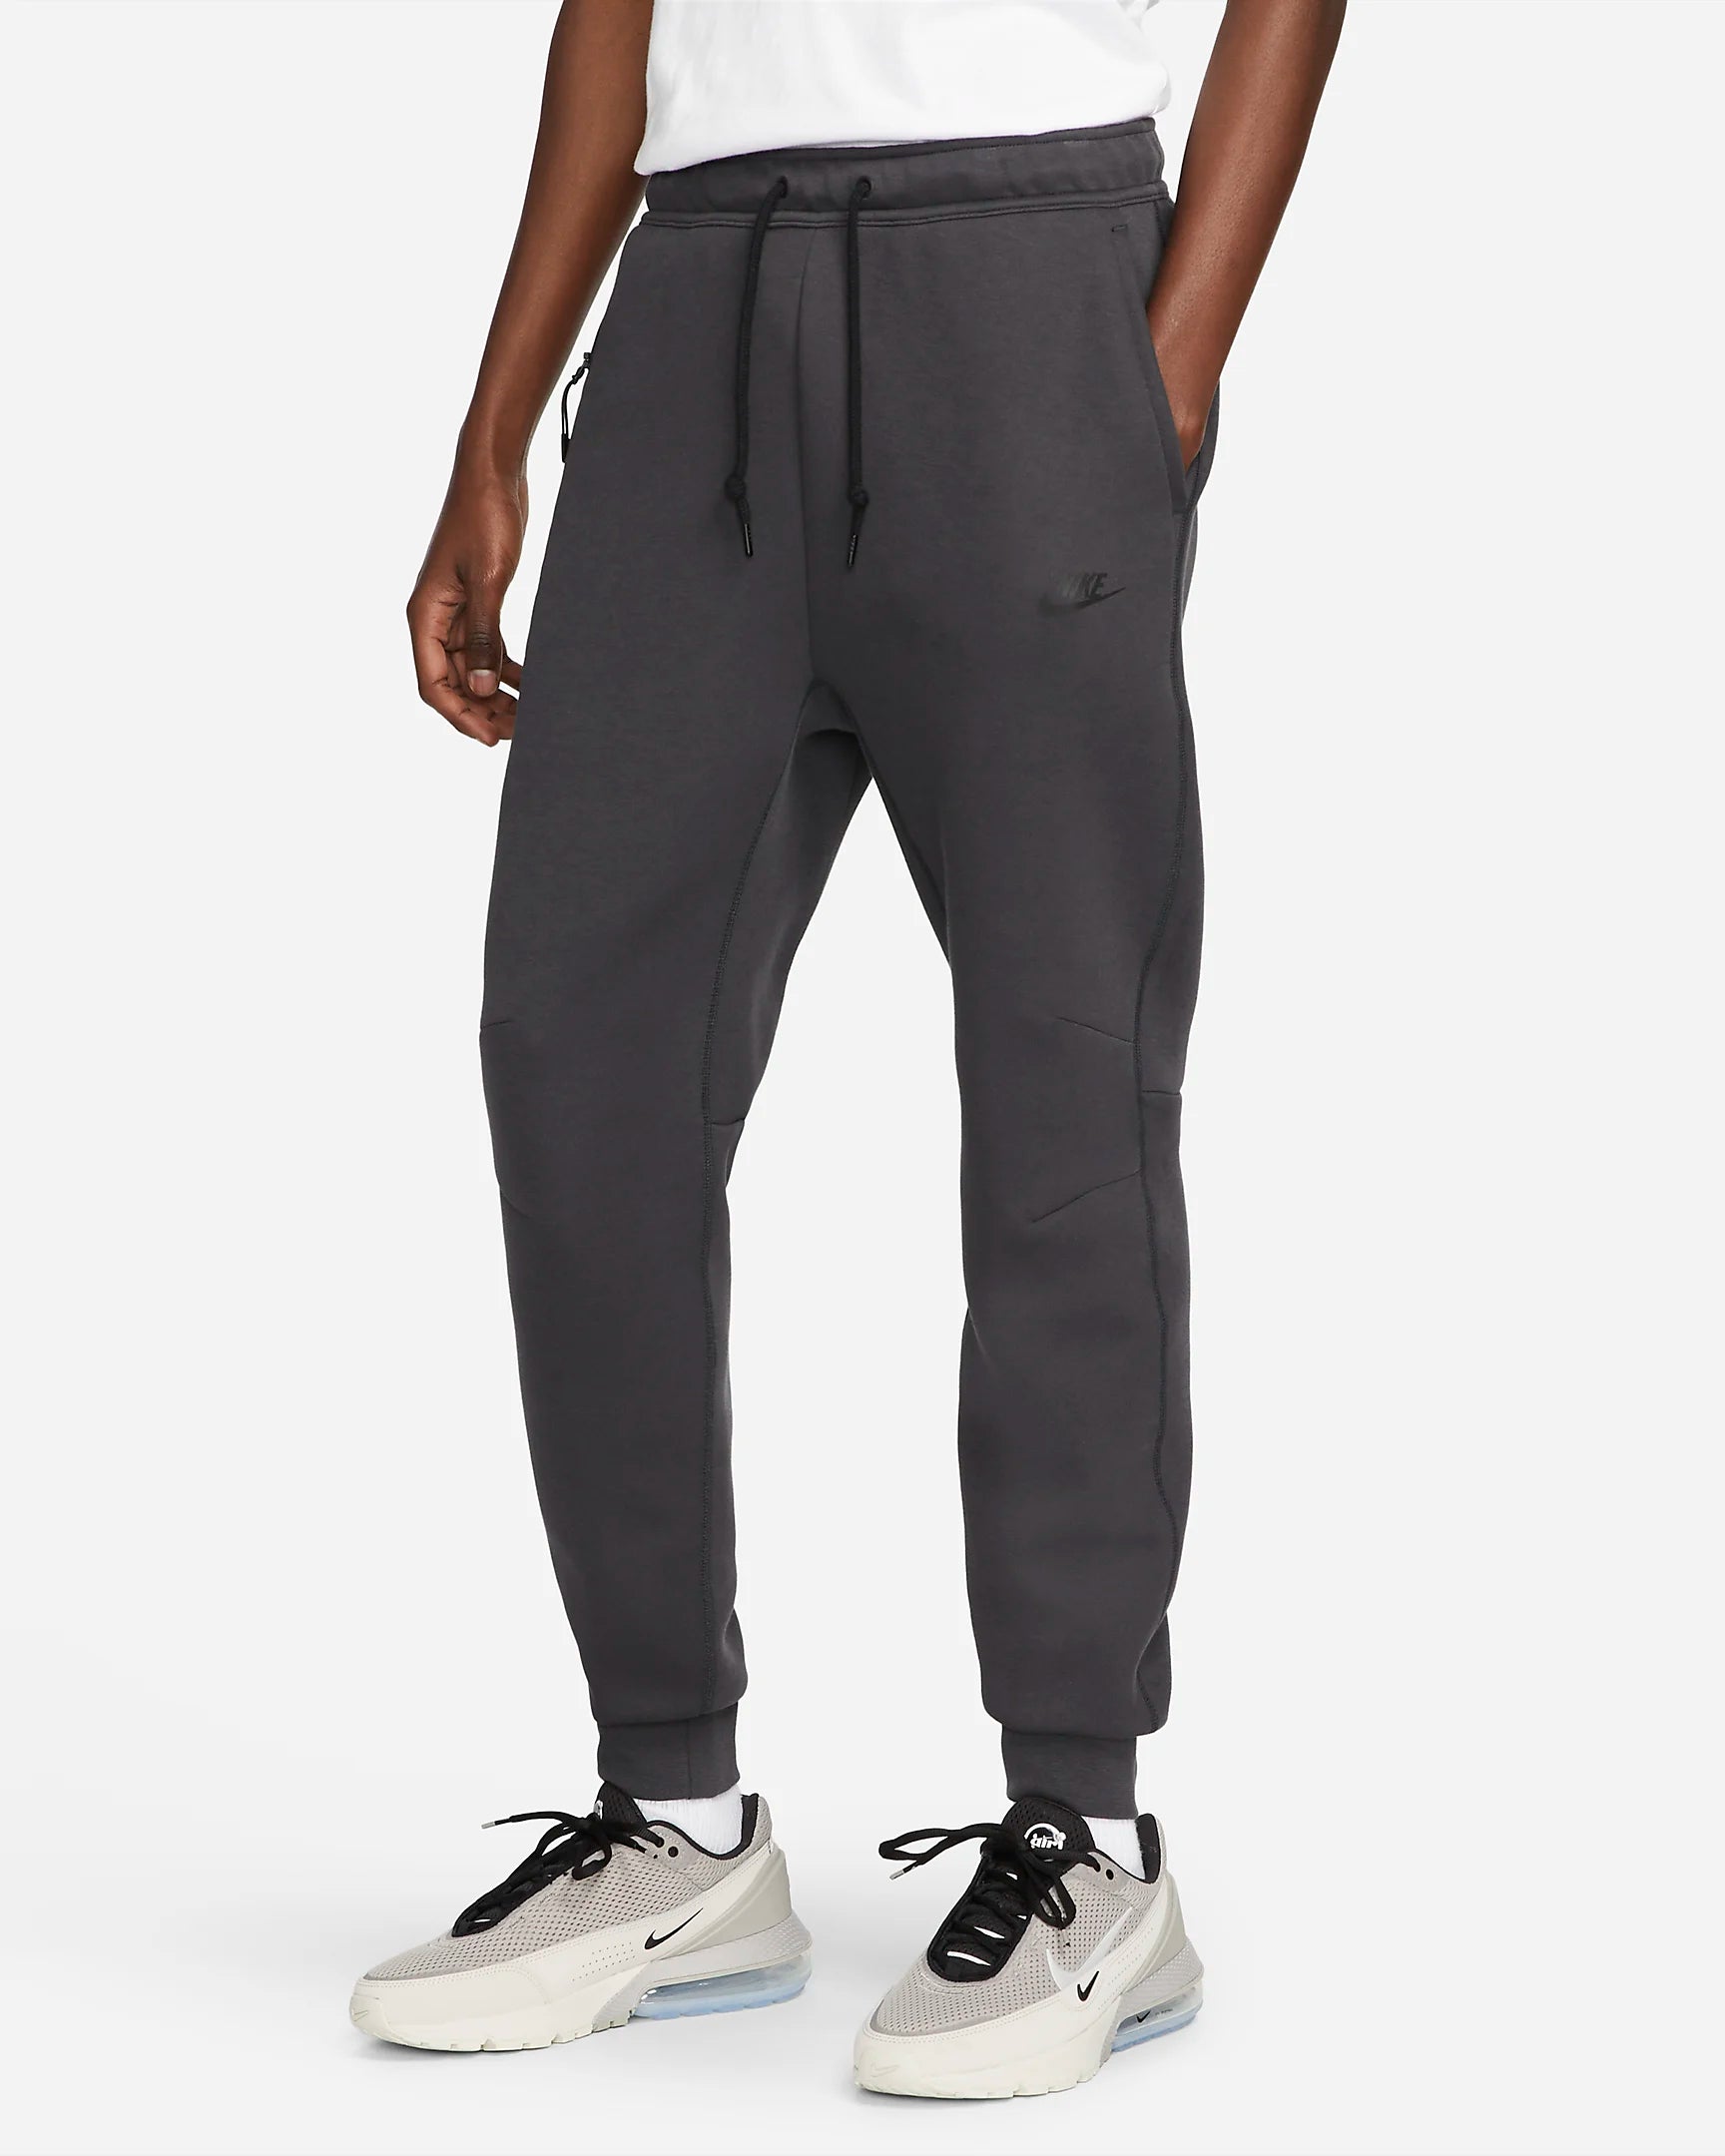 Pantalon Nike Tech Fleece – Schwarz/Grau Anthrazit